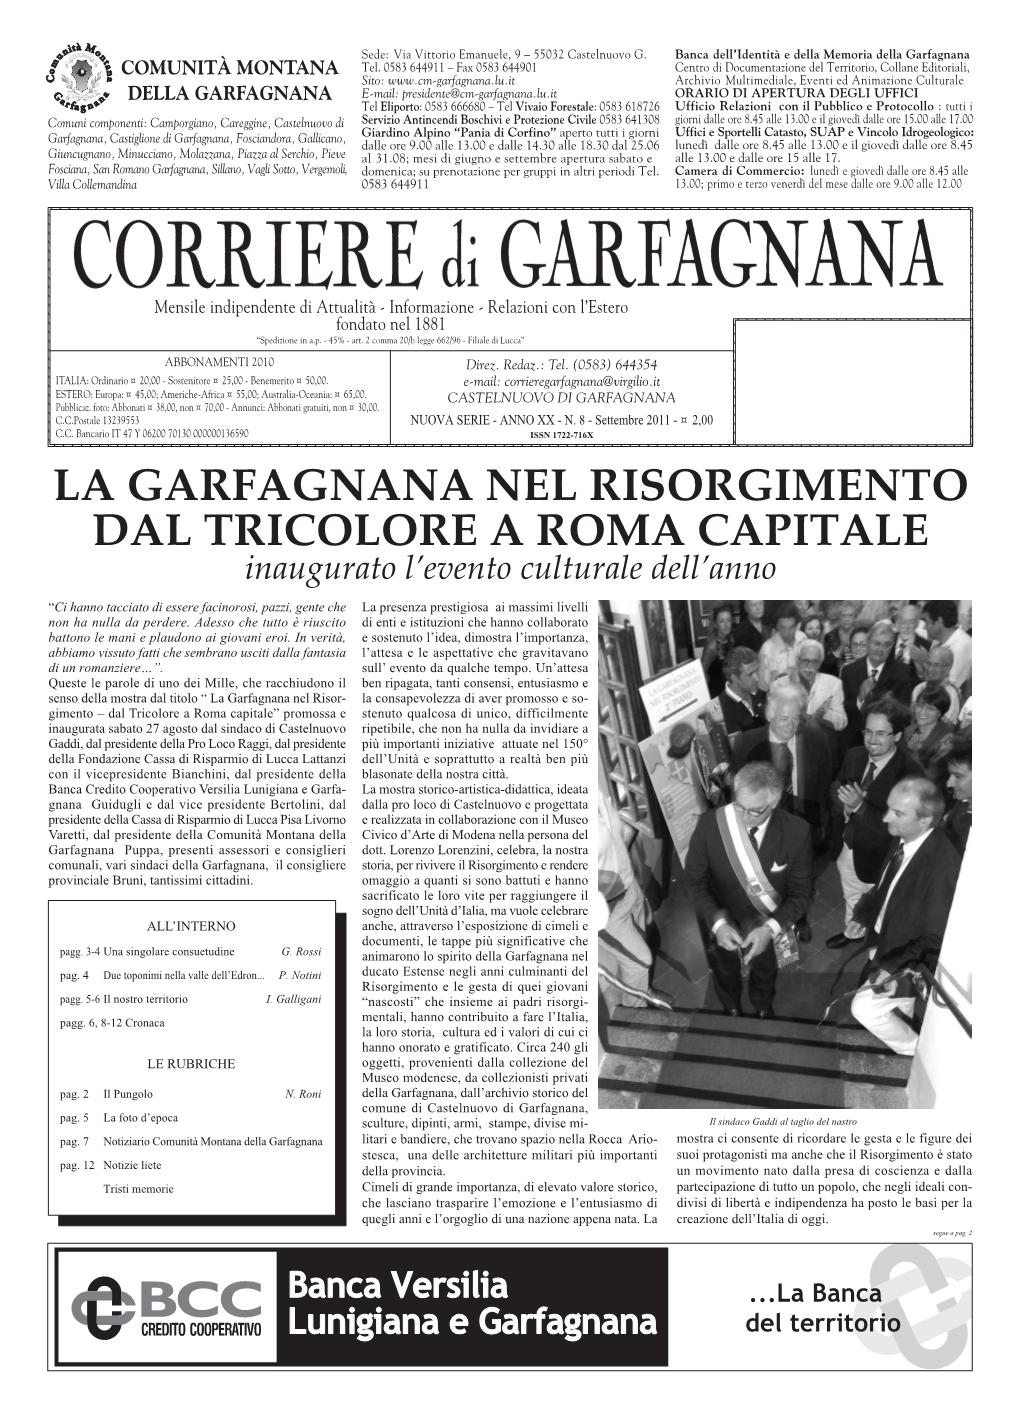 La Garfagnana Nel Risorgimento Dal Tricolore a Roma Capitale